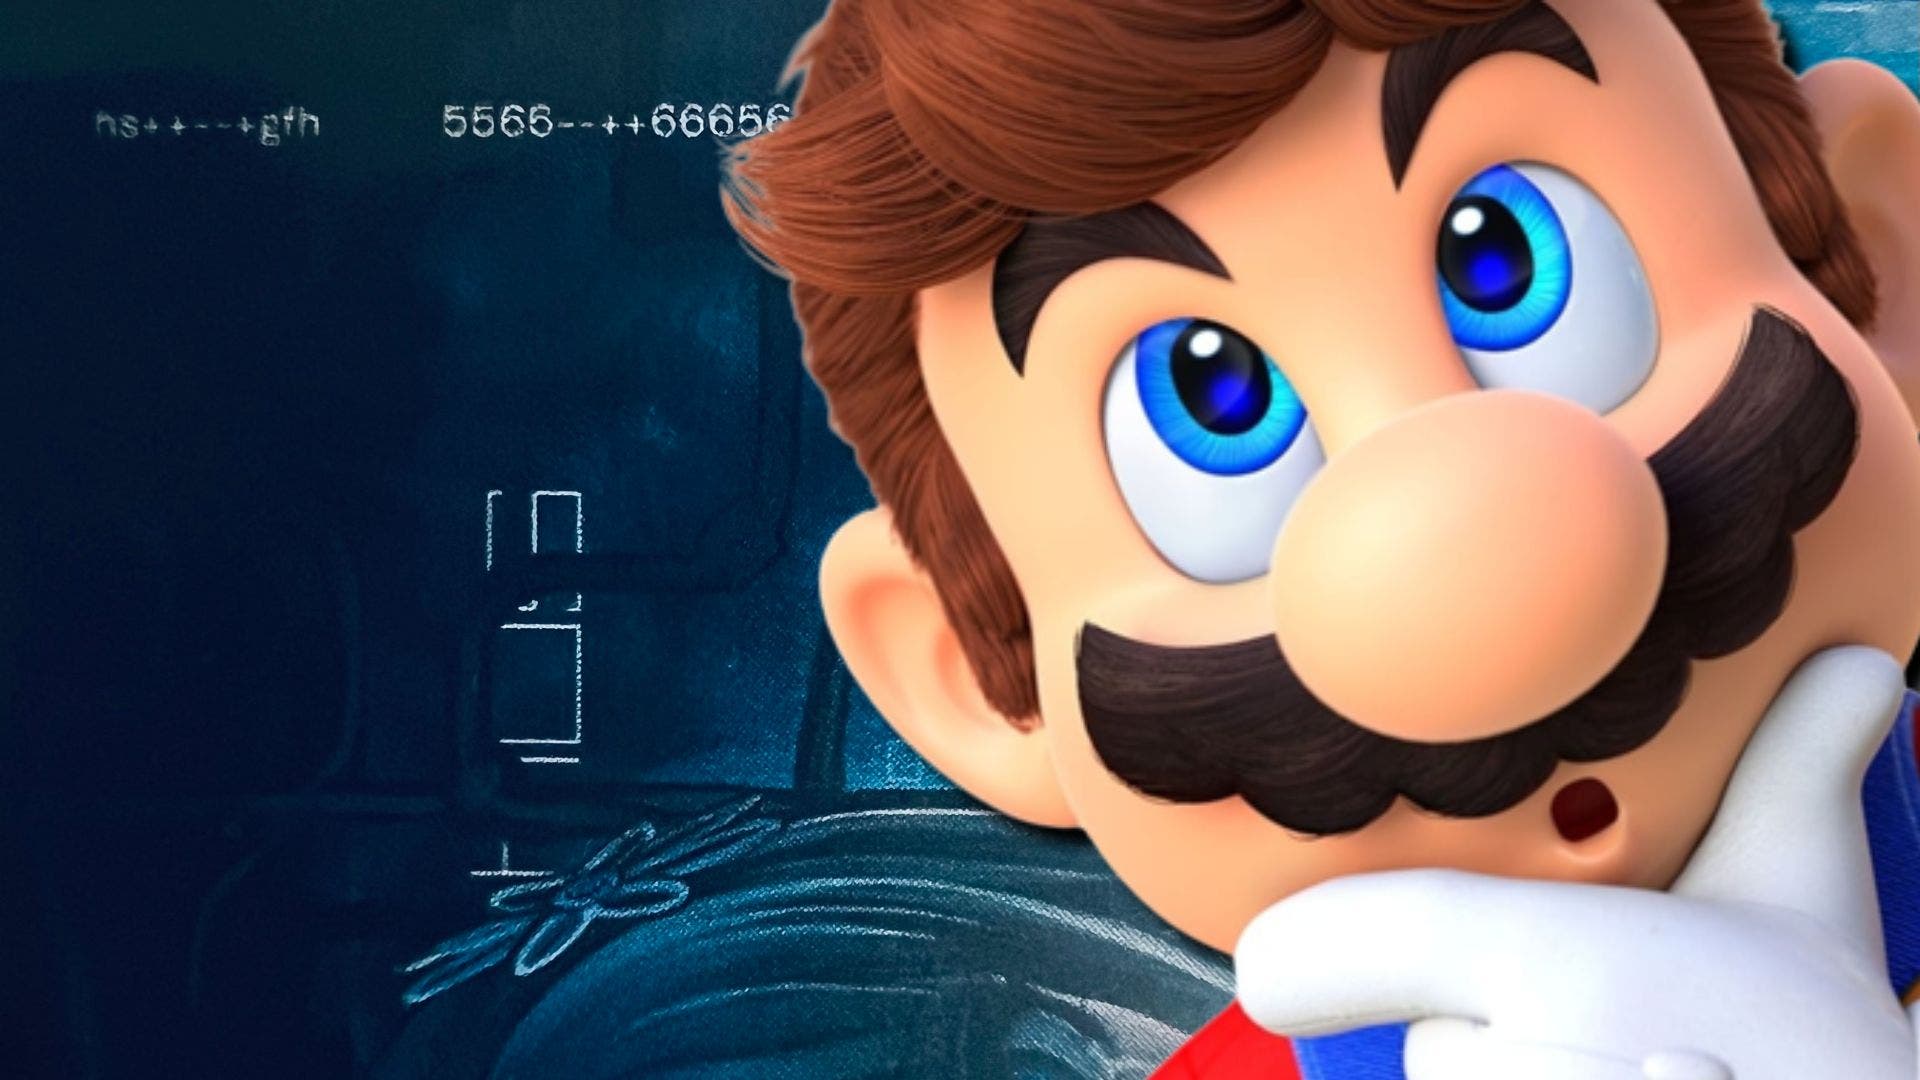 El nuevo juego de Nintendo tiene un código en su caja que nadie ha sido capaz de descifrar aún